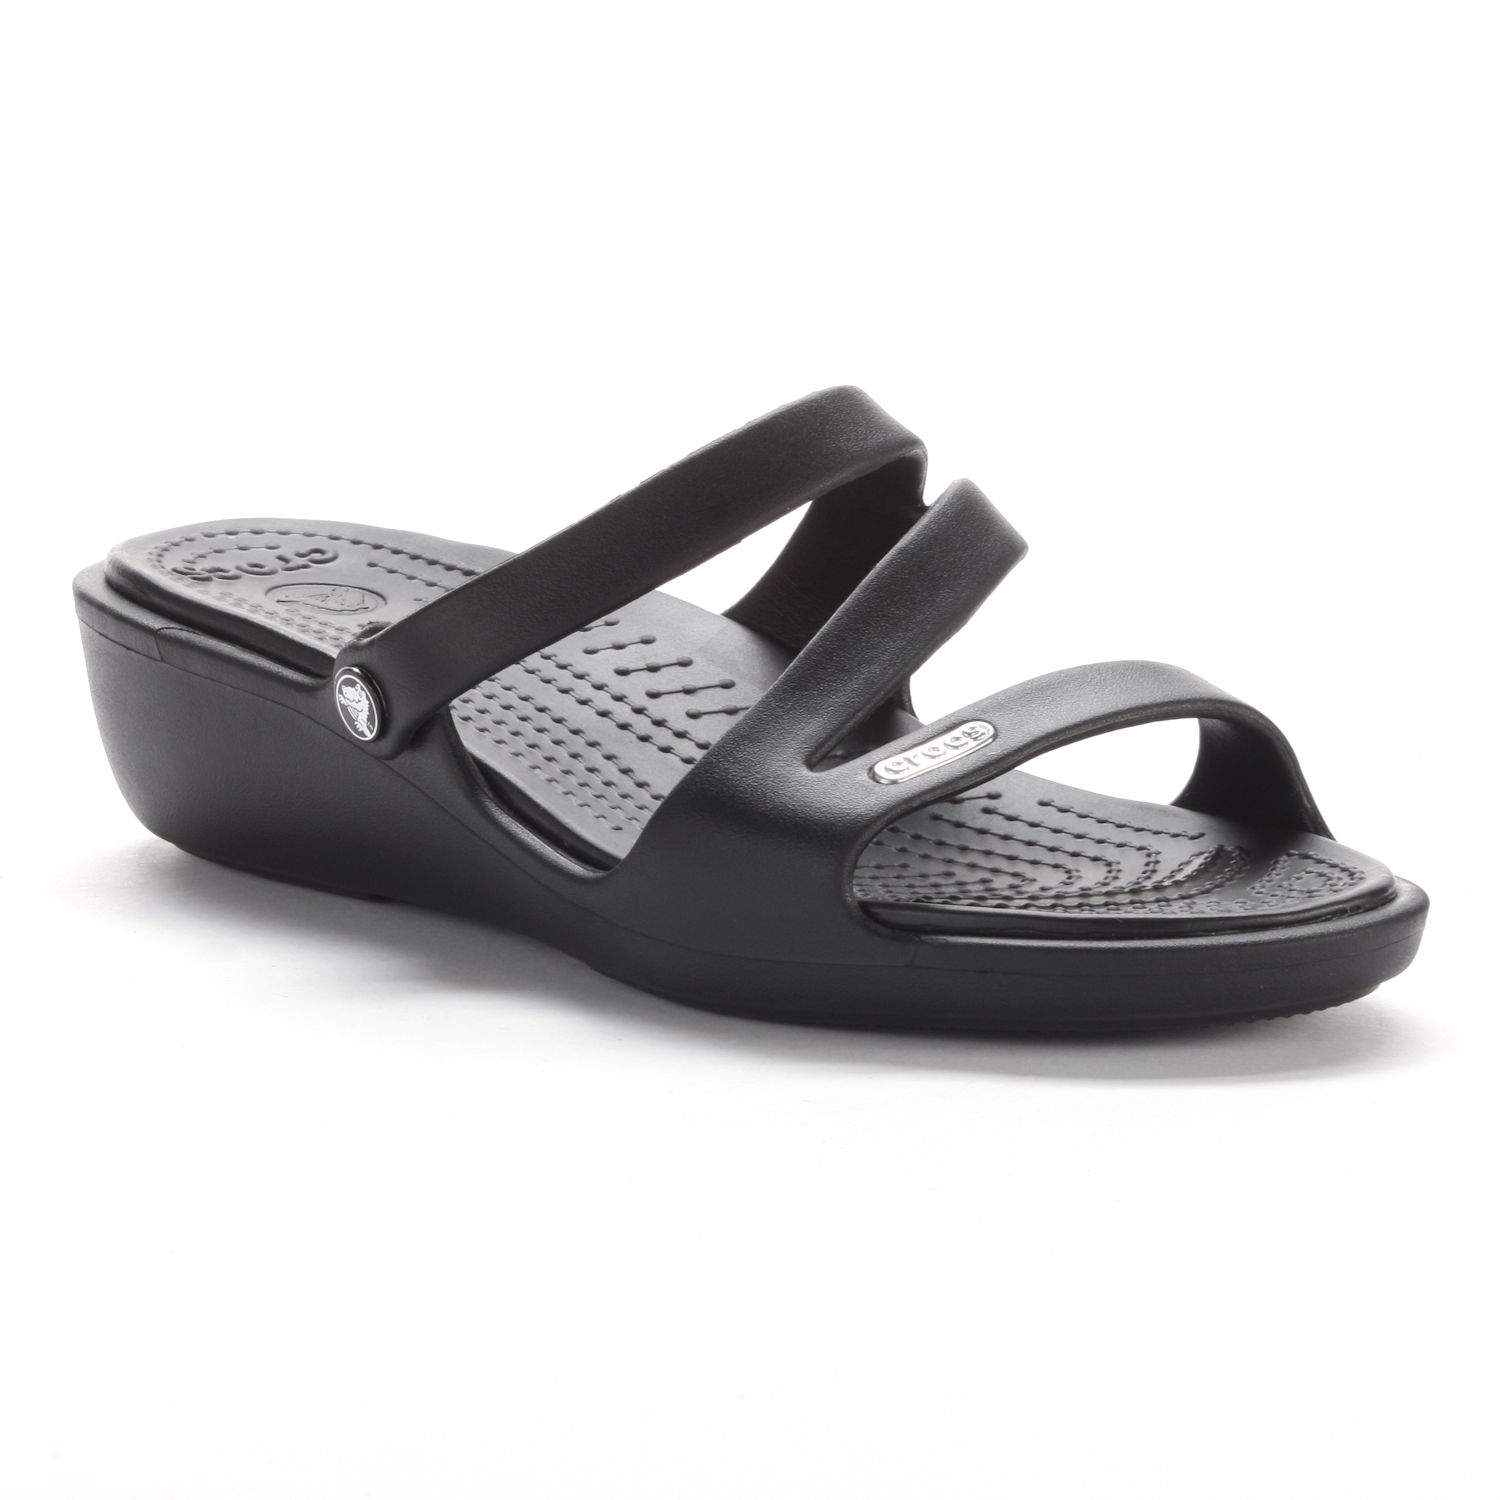 crocs patricia sandals black